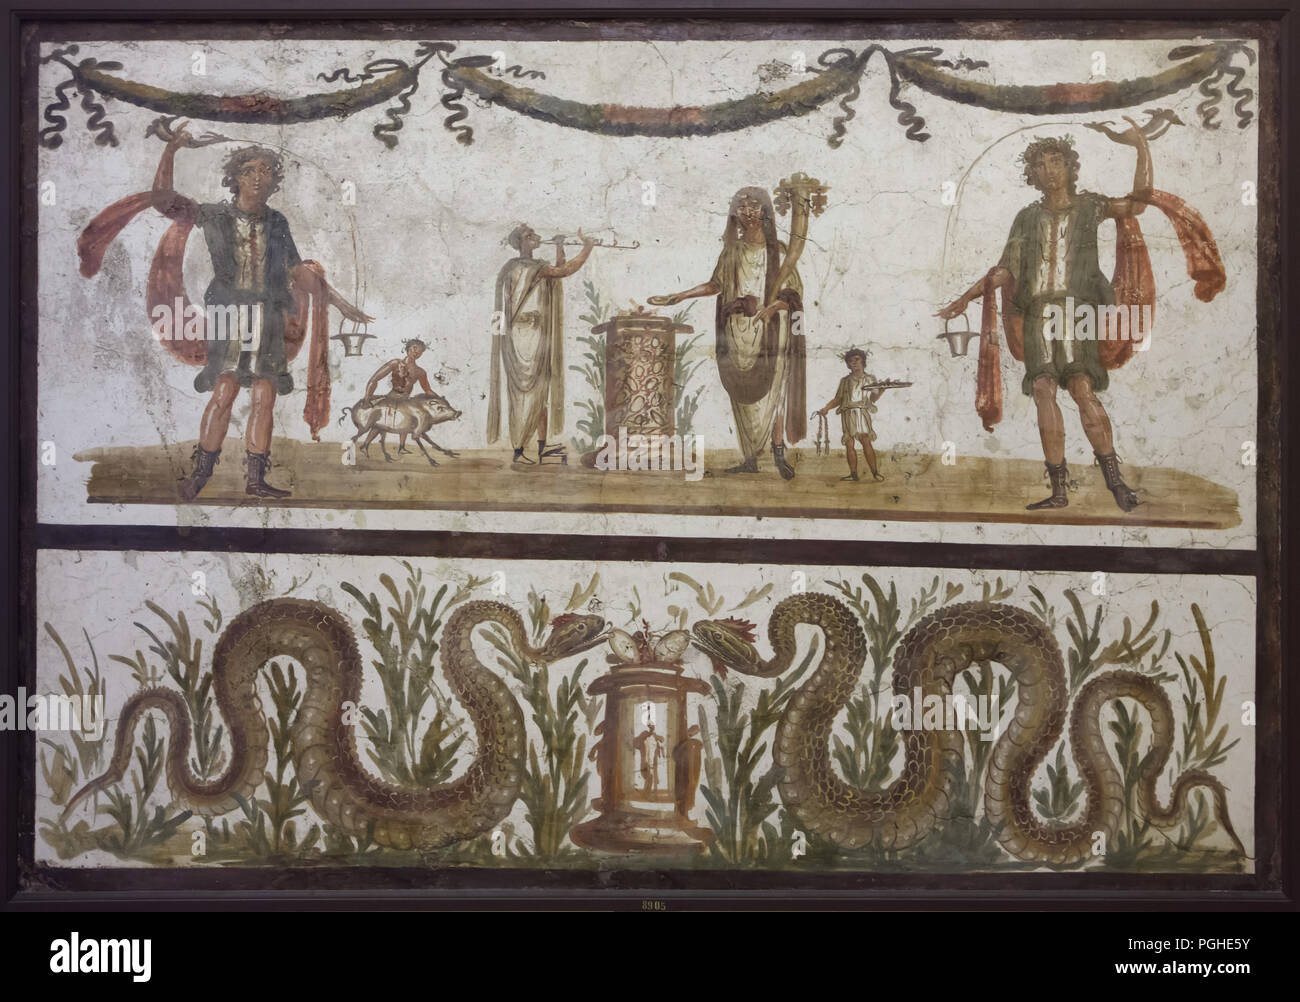 Sacrifice scène représentée dans la fresque romaine de Pompéi, aujourd'hui exposées dans le Musée Archéologique National (Museo Archeologico Nazionale di Napoli) à Naples, Campanie, Italie. Deux lares, dans leurs vêtements caractéristique et constitue, pour le vin de l'rython (corne potable romain) dans la situle - godet). Ils se tiennent de chaque côté d'une scène de sacrifice, effectuée par le génie assisté de fonctionnaires et un musicien avec double-flûte. Sous la scène une paire de serpents, apportent de la prospérité et l'abondance, ont atteint l'offre d'oeufs placés sur un autel. Banque D'Images